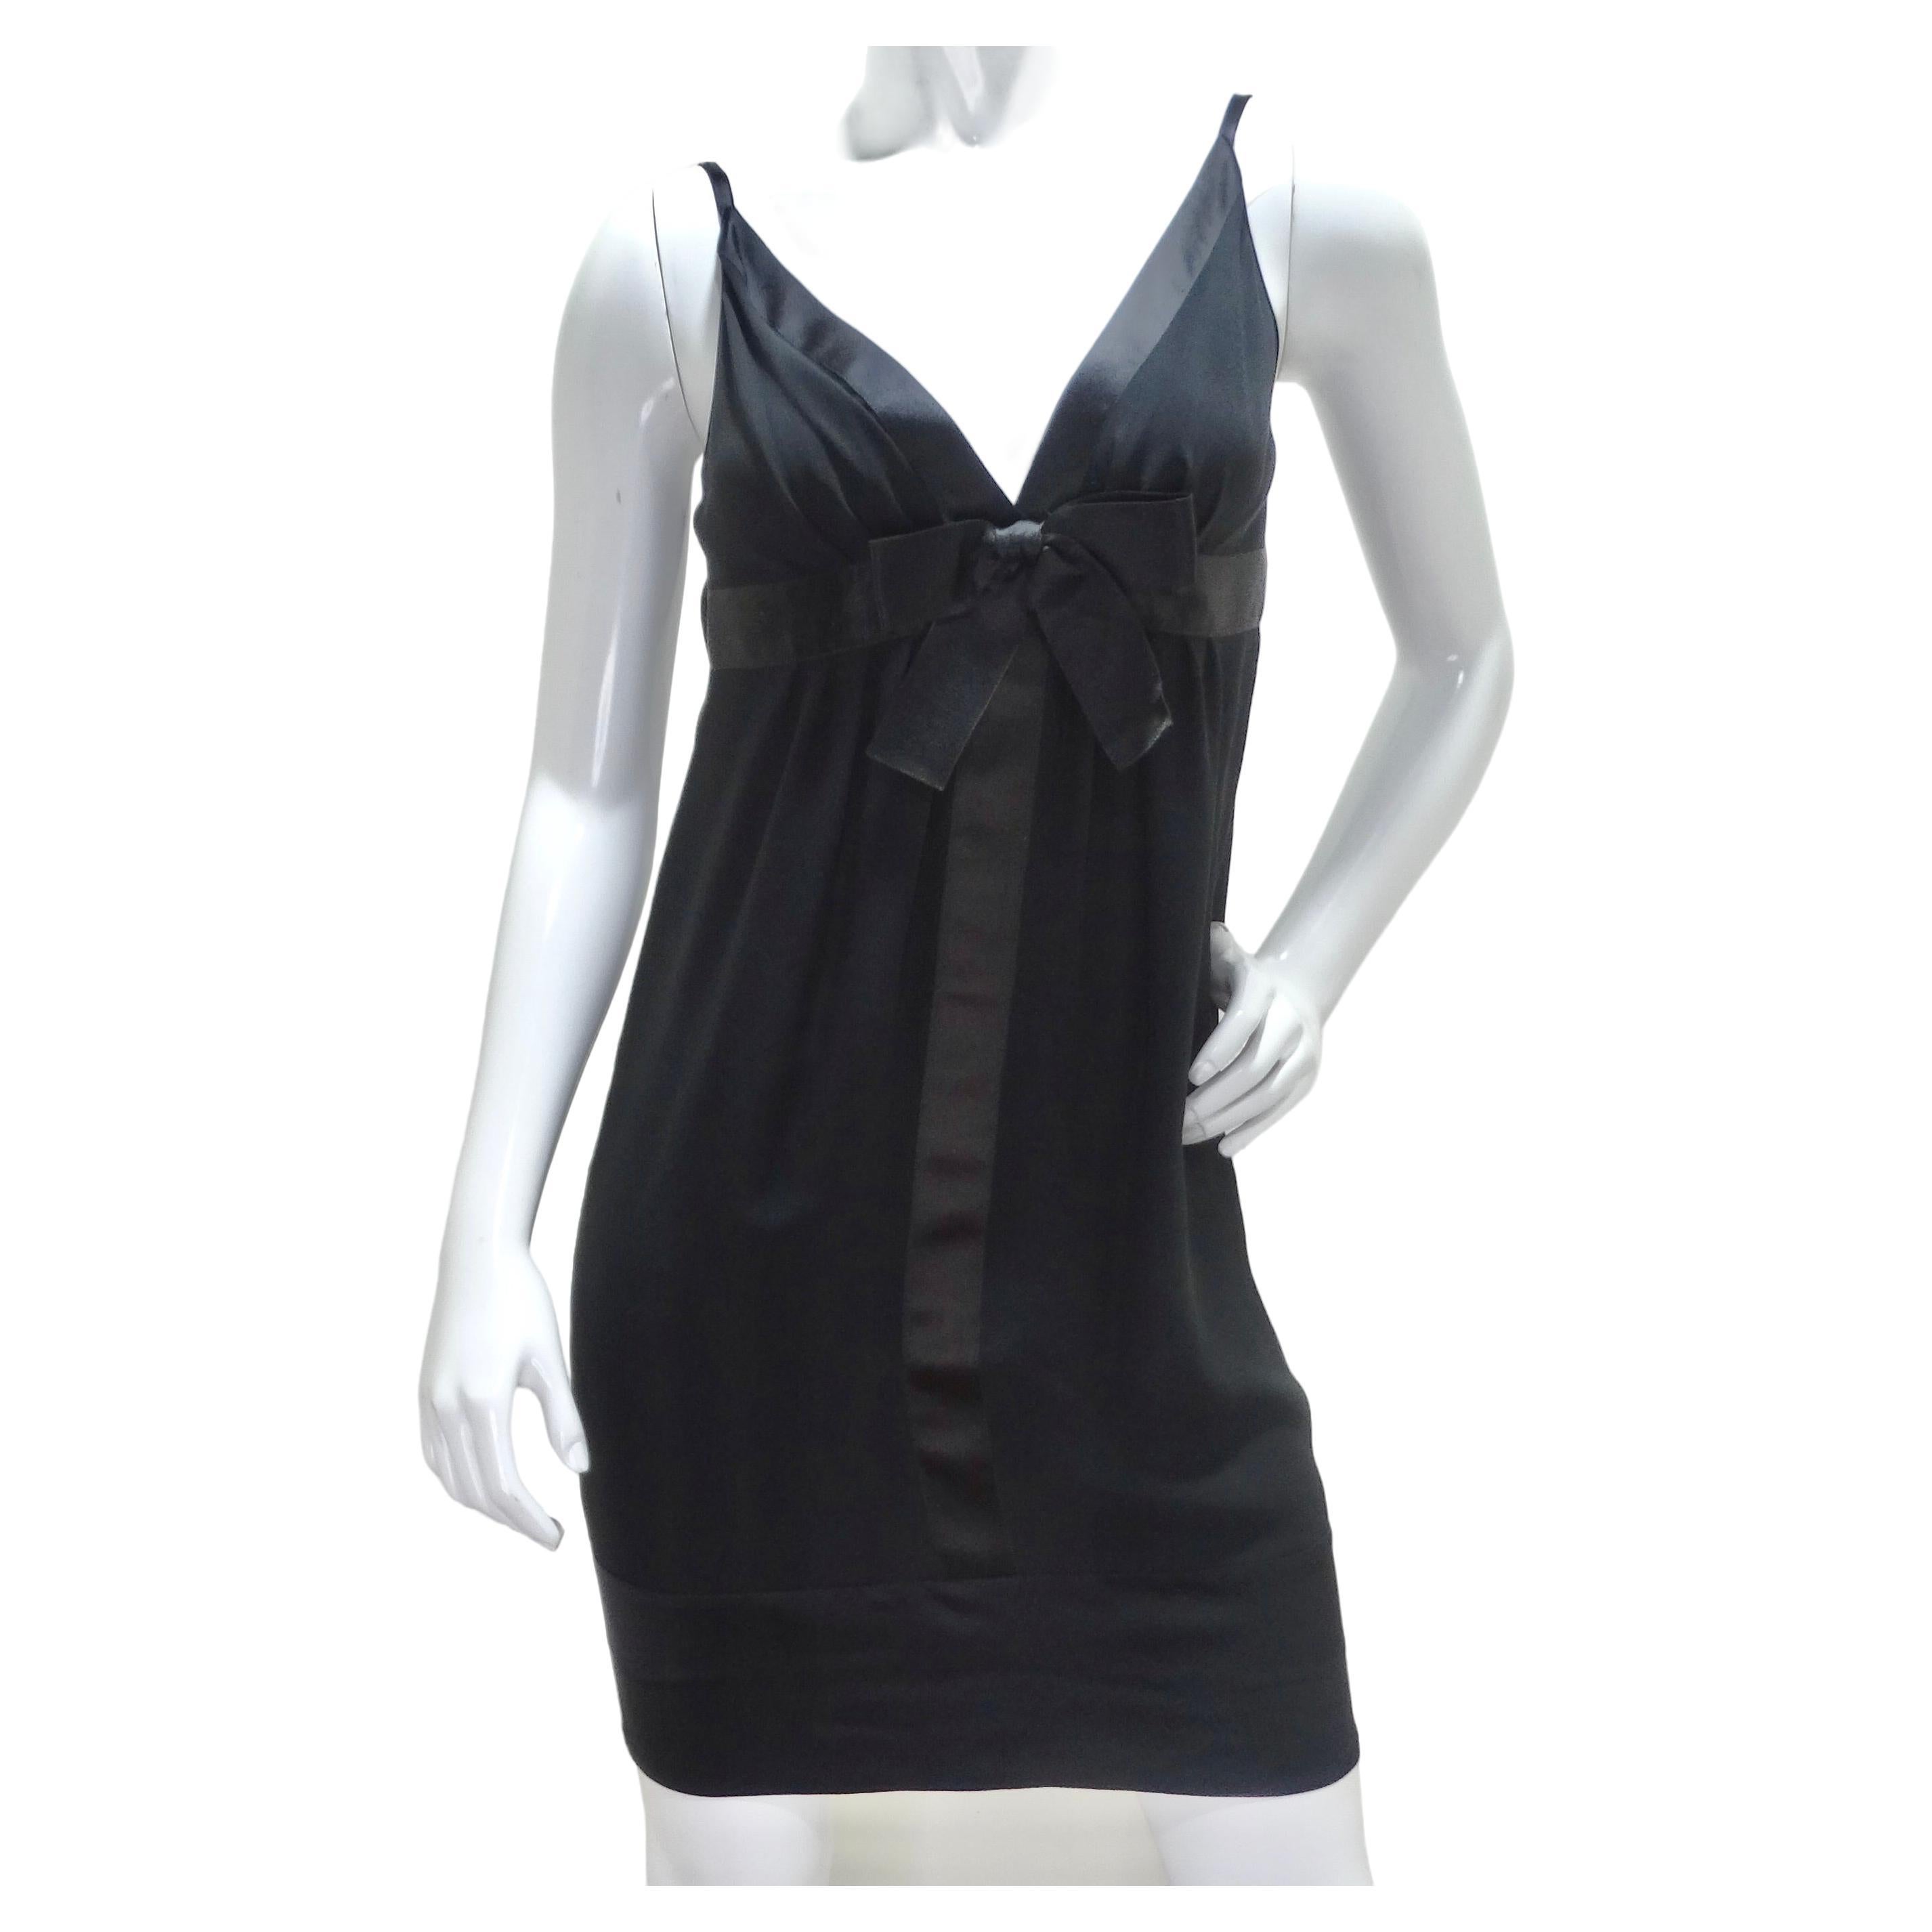 Der Inbegriff zeitloser Eleganz - das Chanel 1990s Silk Bow Motif Little Black Dress. Dieses schwarze Midikleid aus Seide ist nicht nur ein Kleidungsstück, sondern ein tragbarer Ausdruck von Raffinesse und Weiblichkeit. Stellen Sie sich selbst in